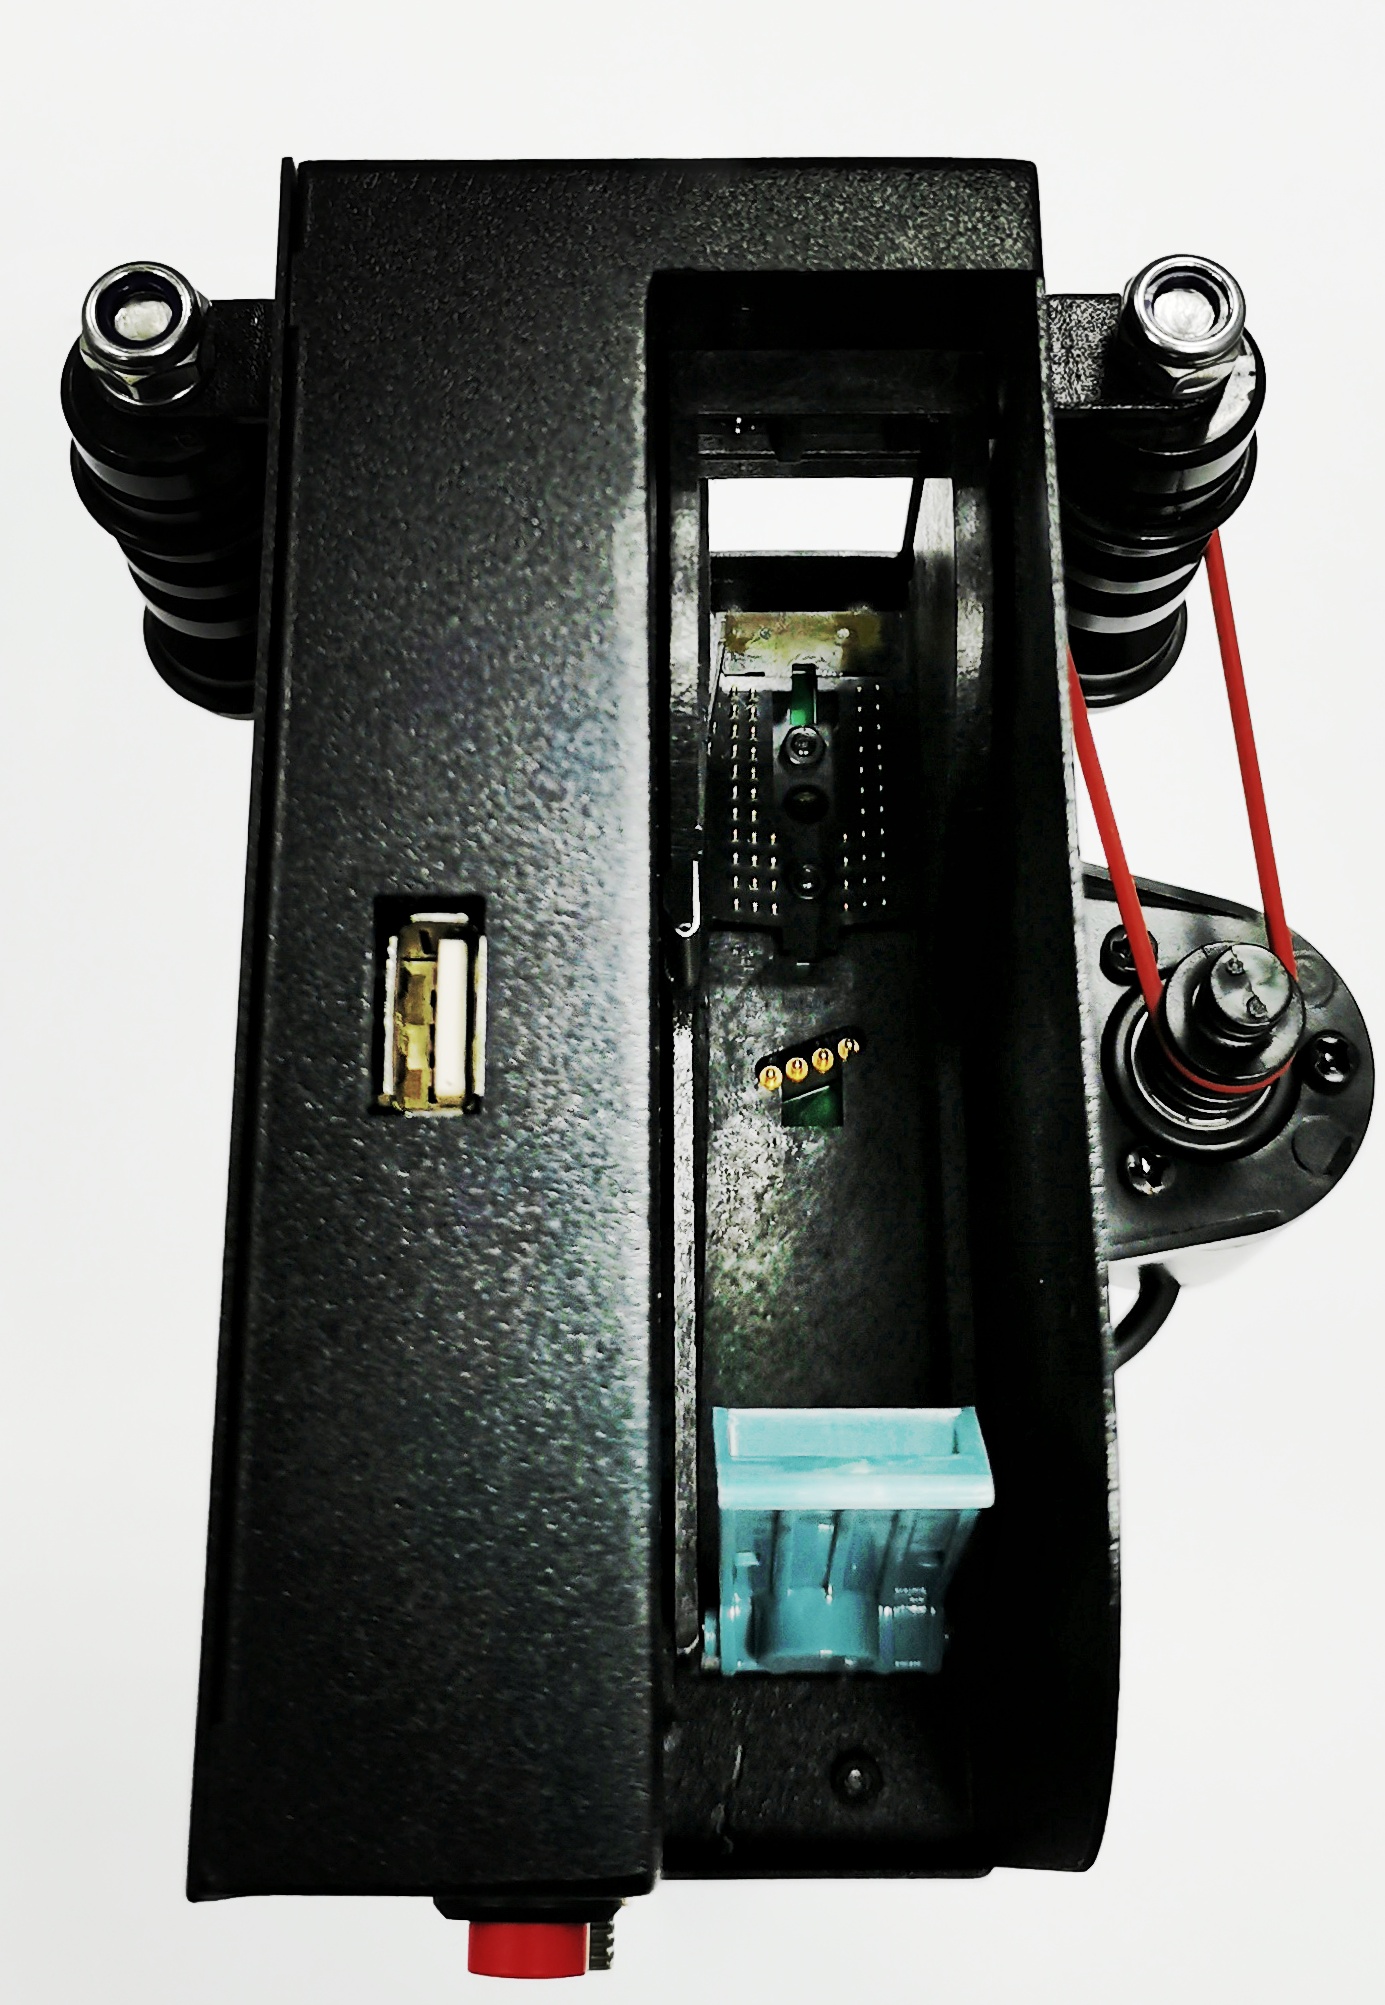 Аккумуляторный термоструйный маркиратор RUSMARK КПМ-12S для сольвентных чернил